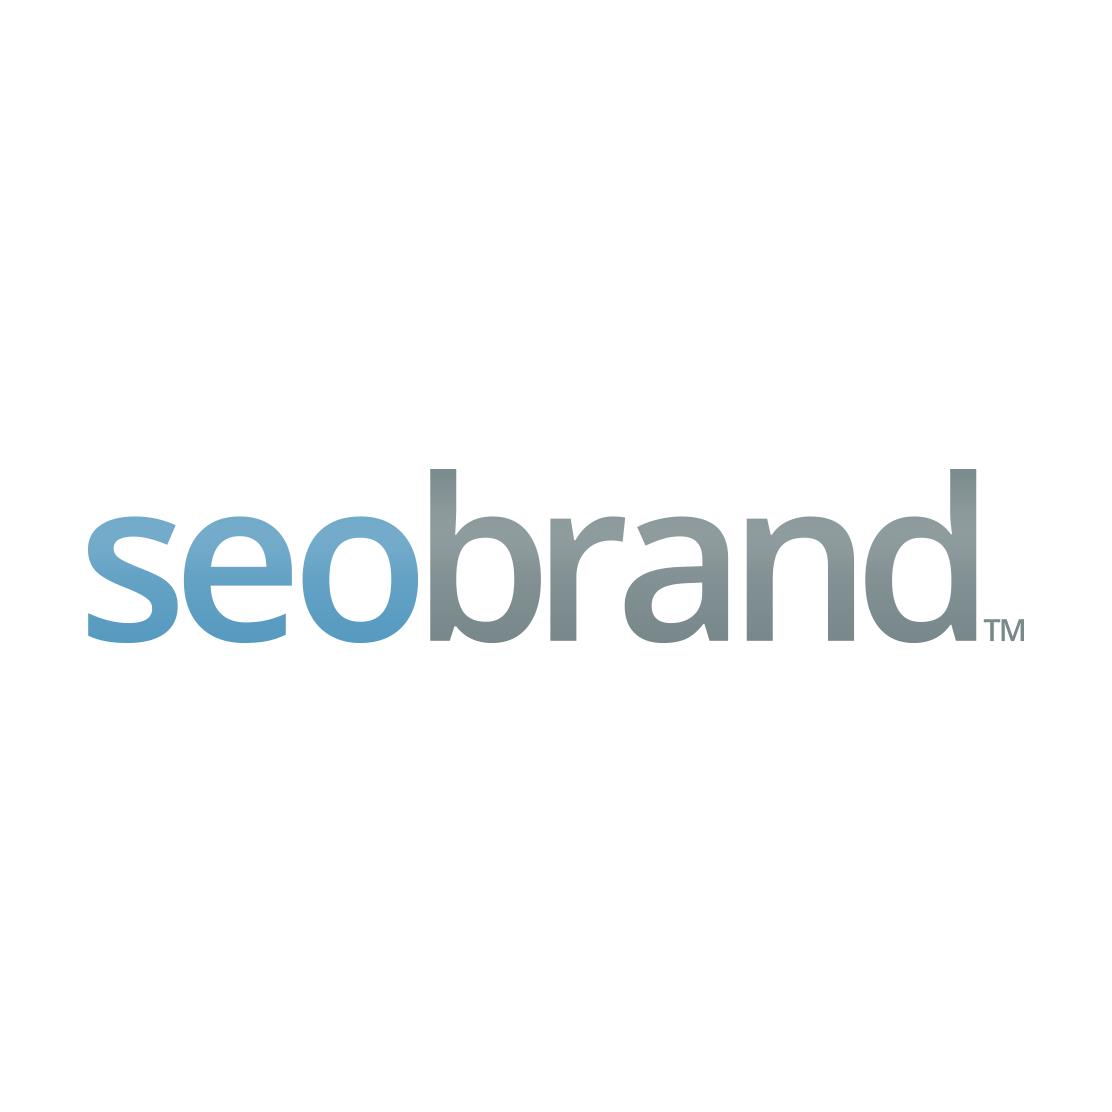 Best Social Media Marketing Company Logo: SEO Brand